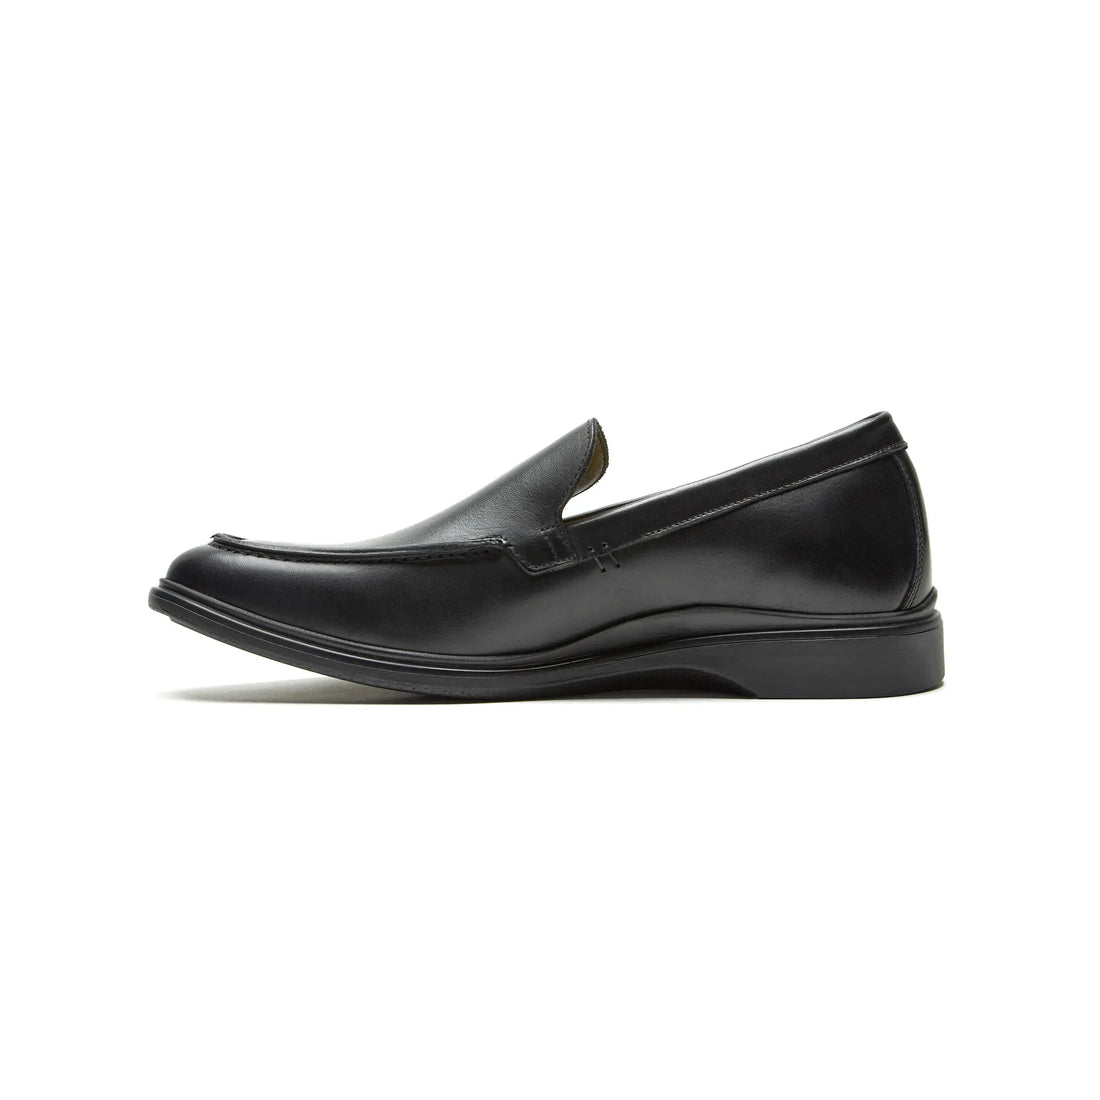 Men's Obsidian Black Leather Slip-on Loafer from Amberjack